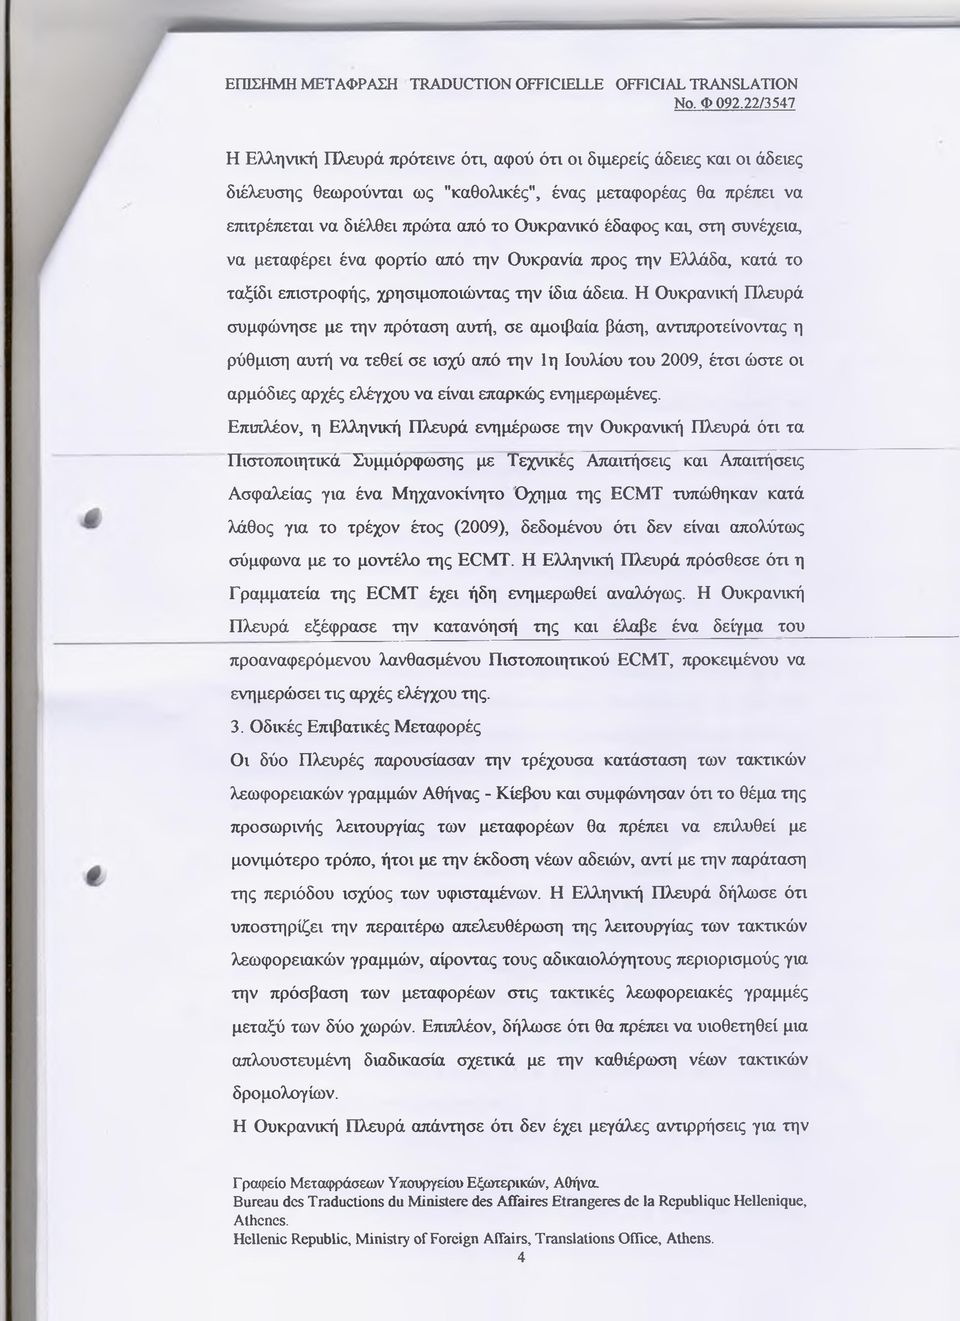 Η Ουκρανική Πλευρά συμφώνησε με την πρόταση αυτή, σε αμοιβαία βάση, αντιπροτείνοντας η ρύθμιση αυτή να τεθεί σε ισχύ από την 1η Ιουλίου του 2009, έτσι ώστε οι αρμόδιες αρχές ελέγχου να είναι επαρκώς